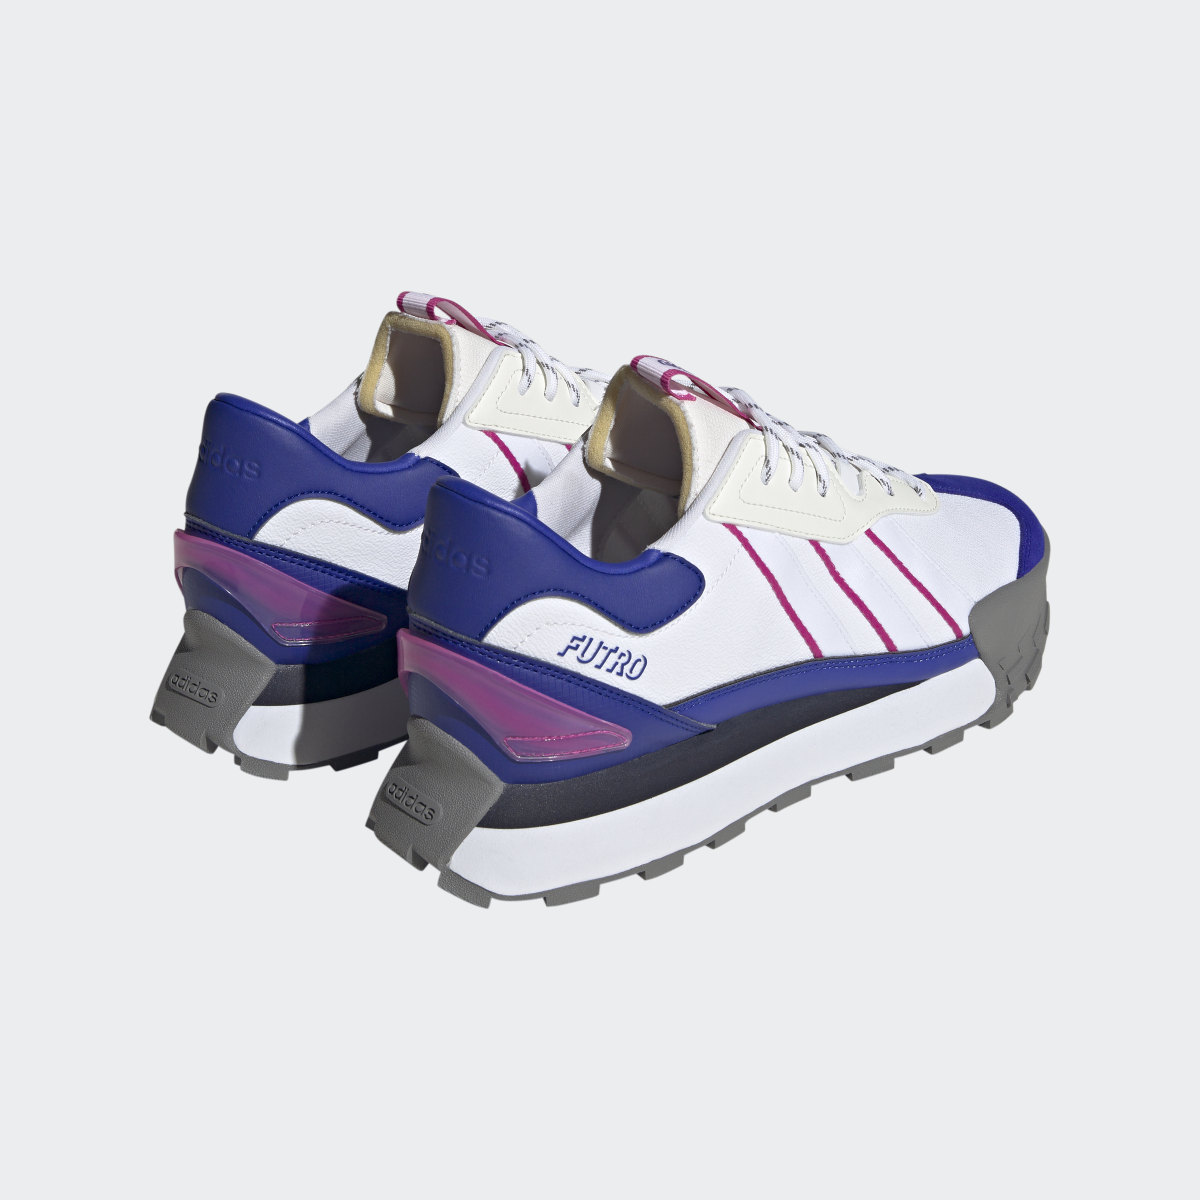 Adidas Futro Mixr Shoes. 6